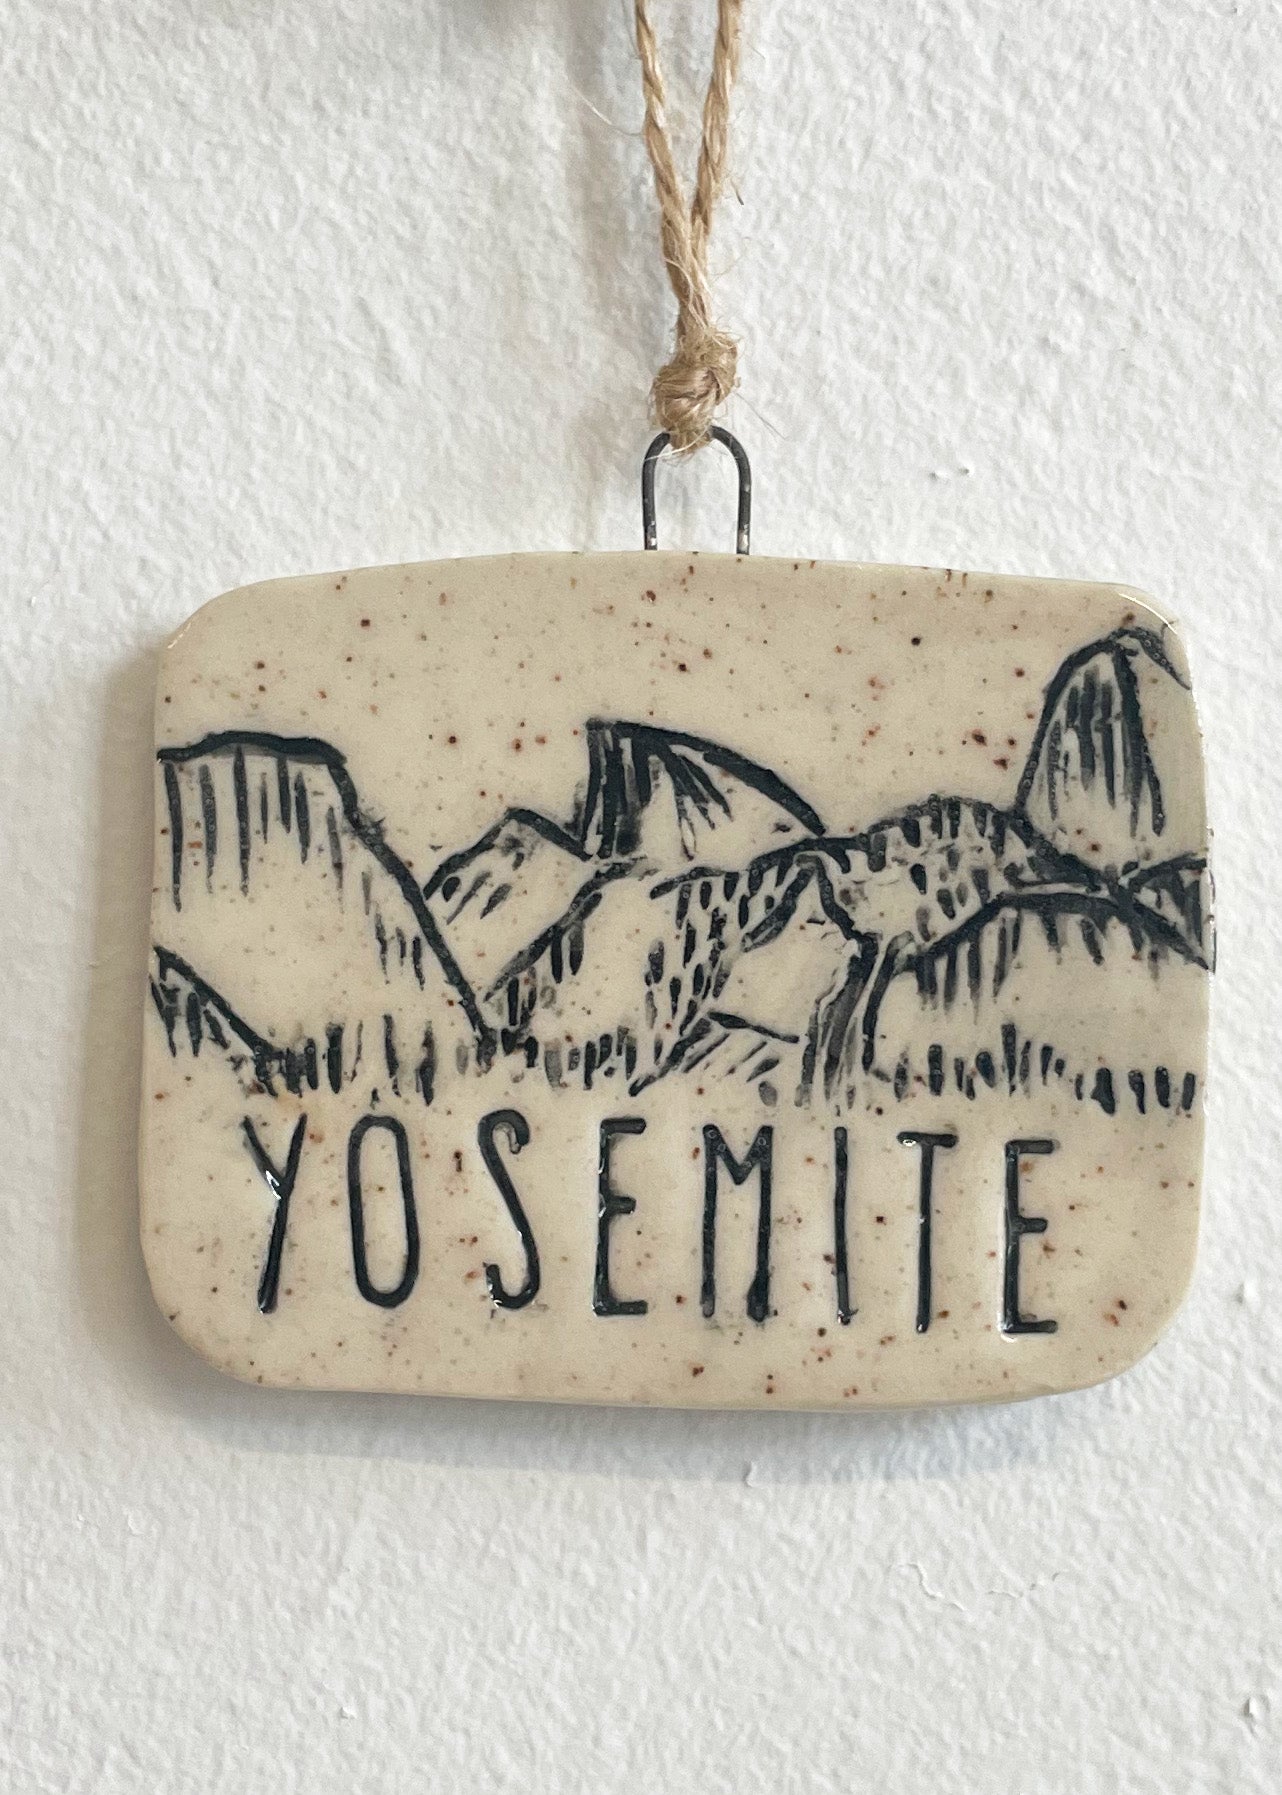 Yosemite Tunnel View Ornament, No 3